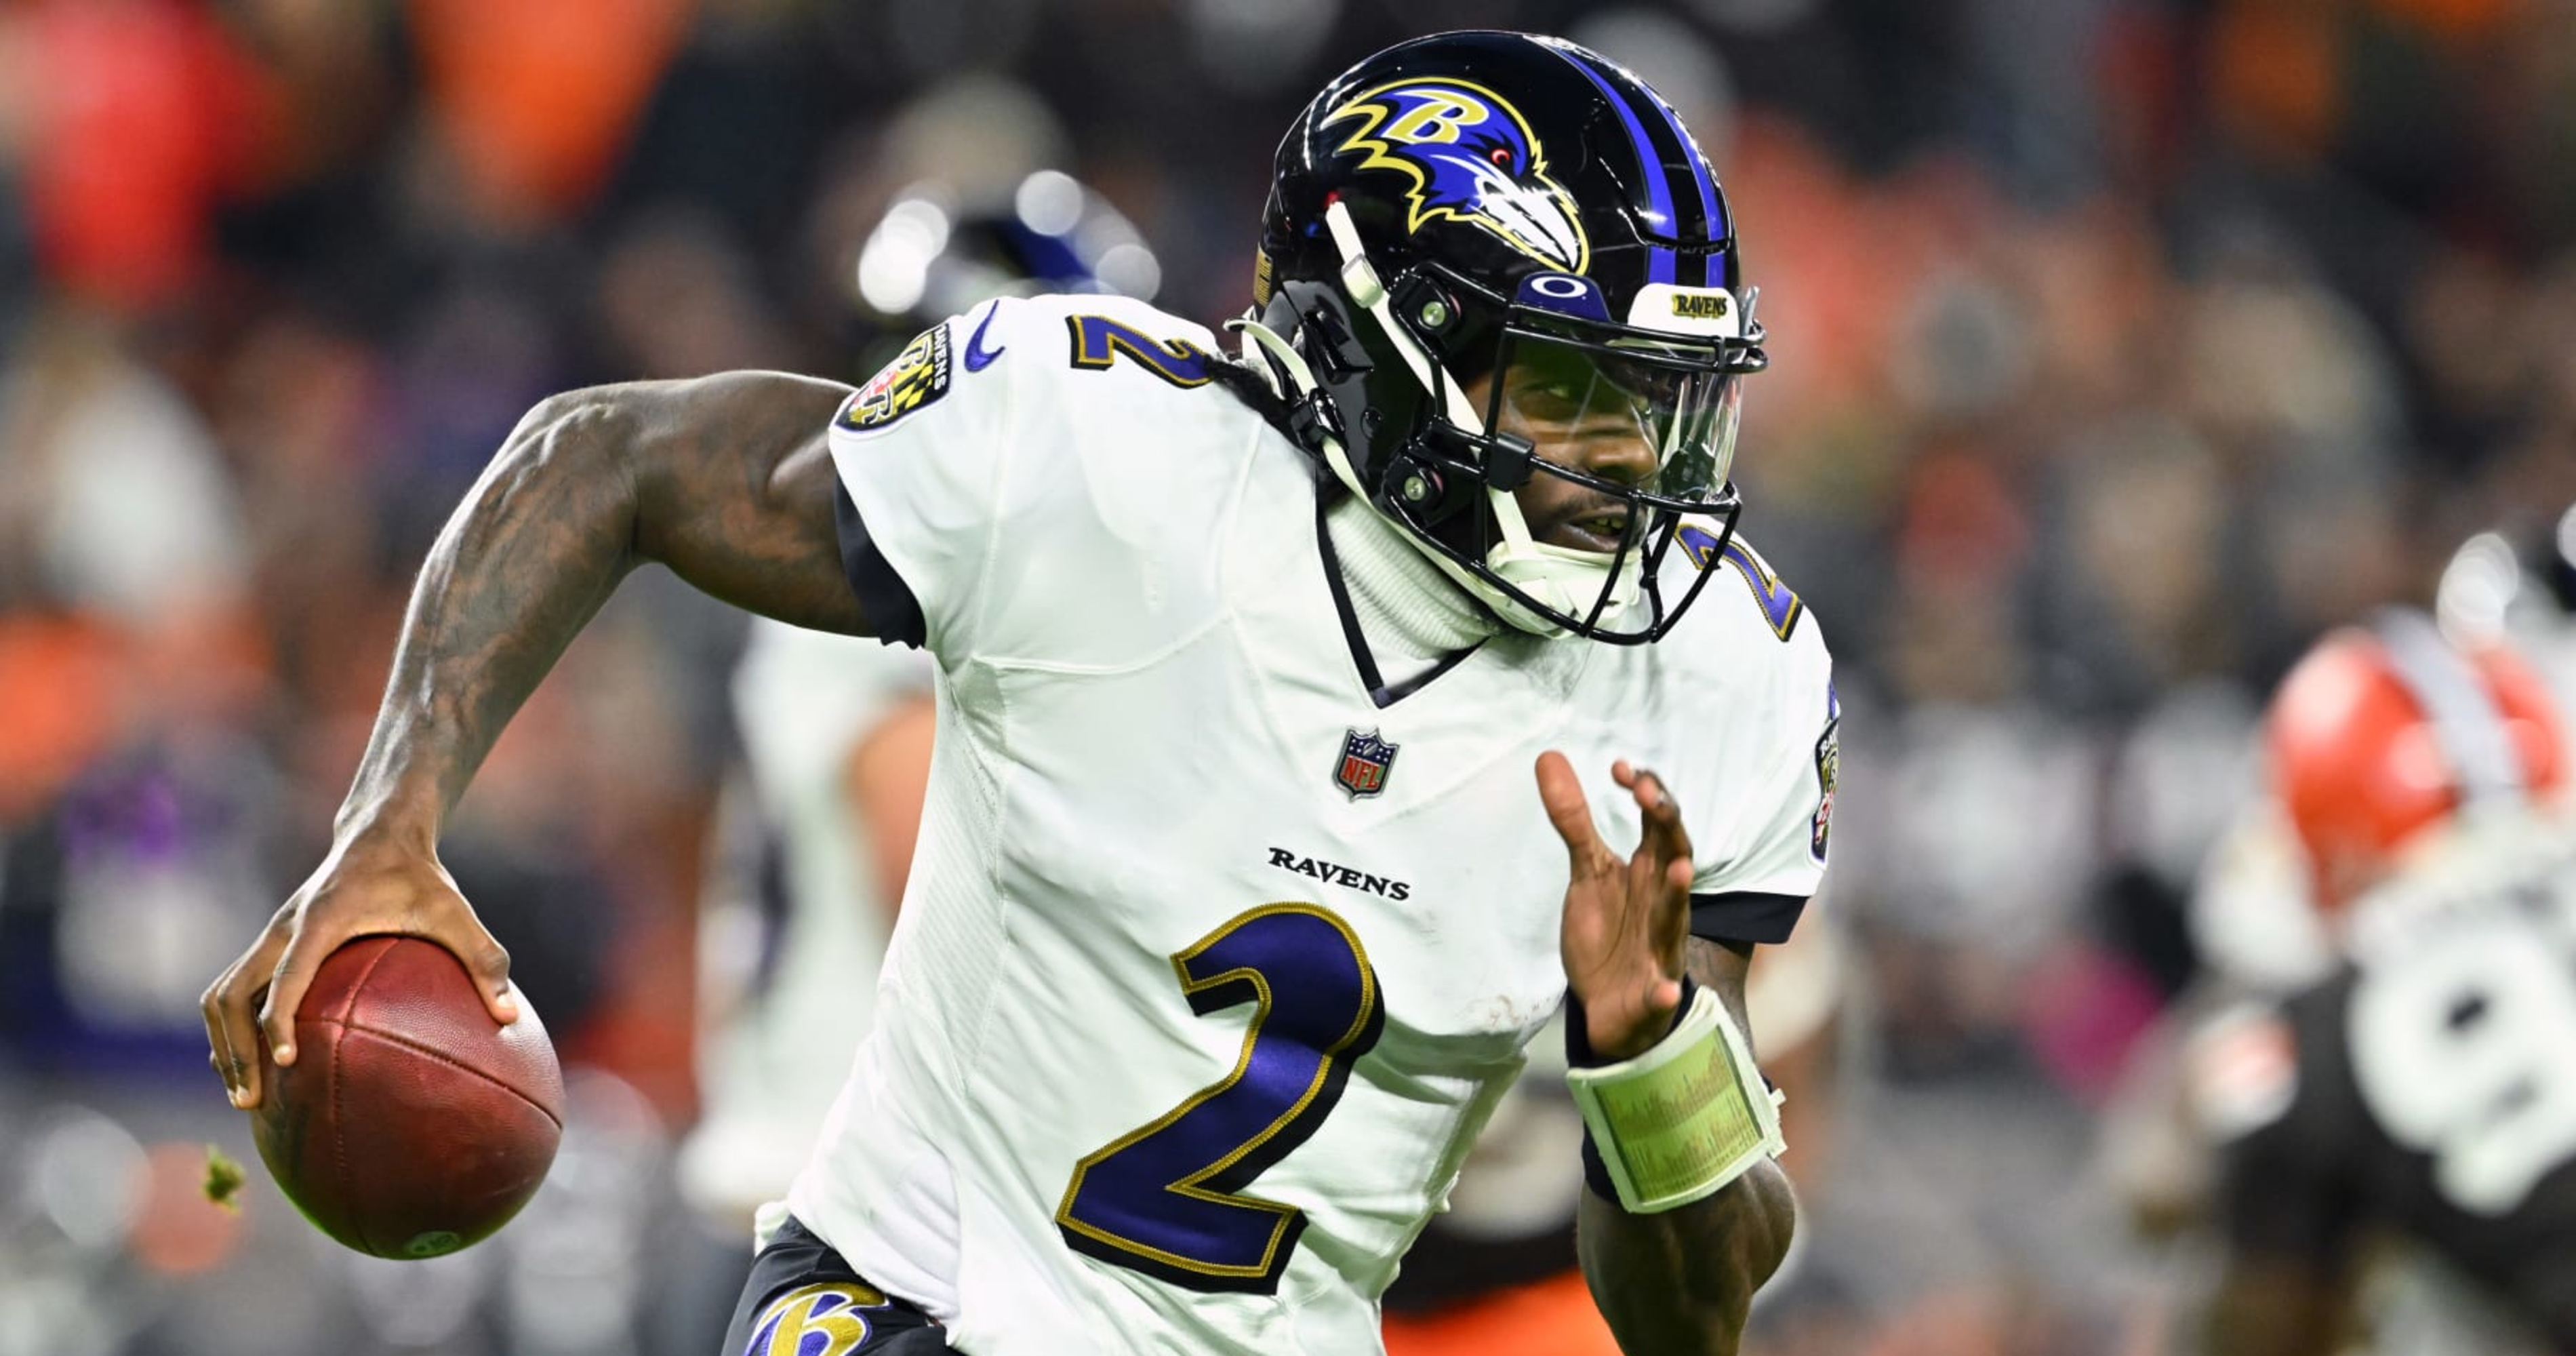 ESPN: Ravens' Tyler Huntley Voted AFC's 4th Pro Bowl Alternative, After Lamar Ja..